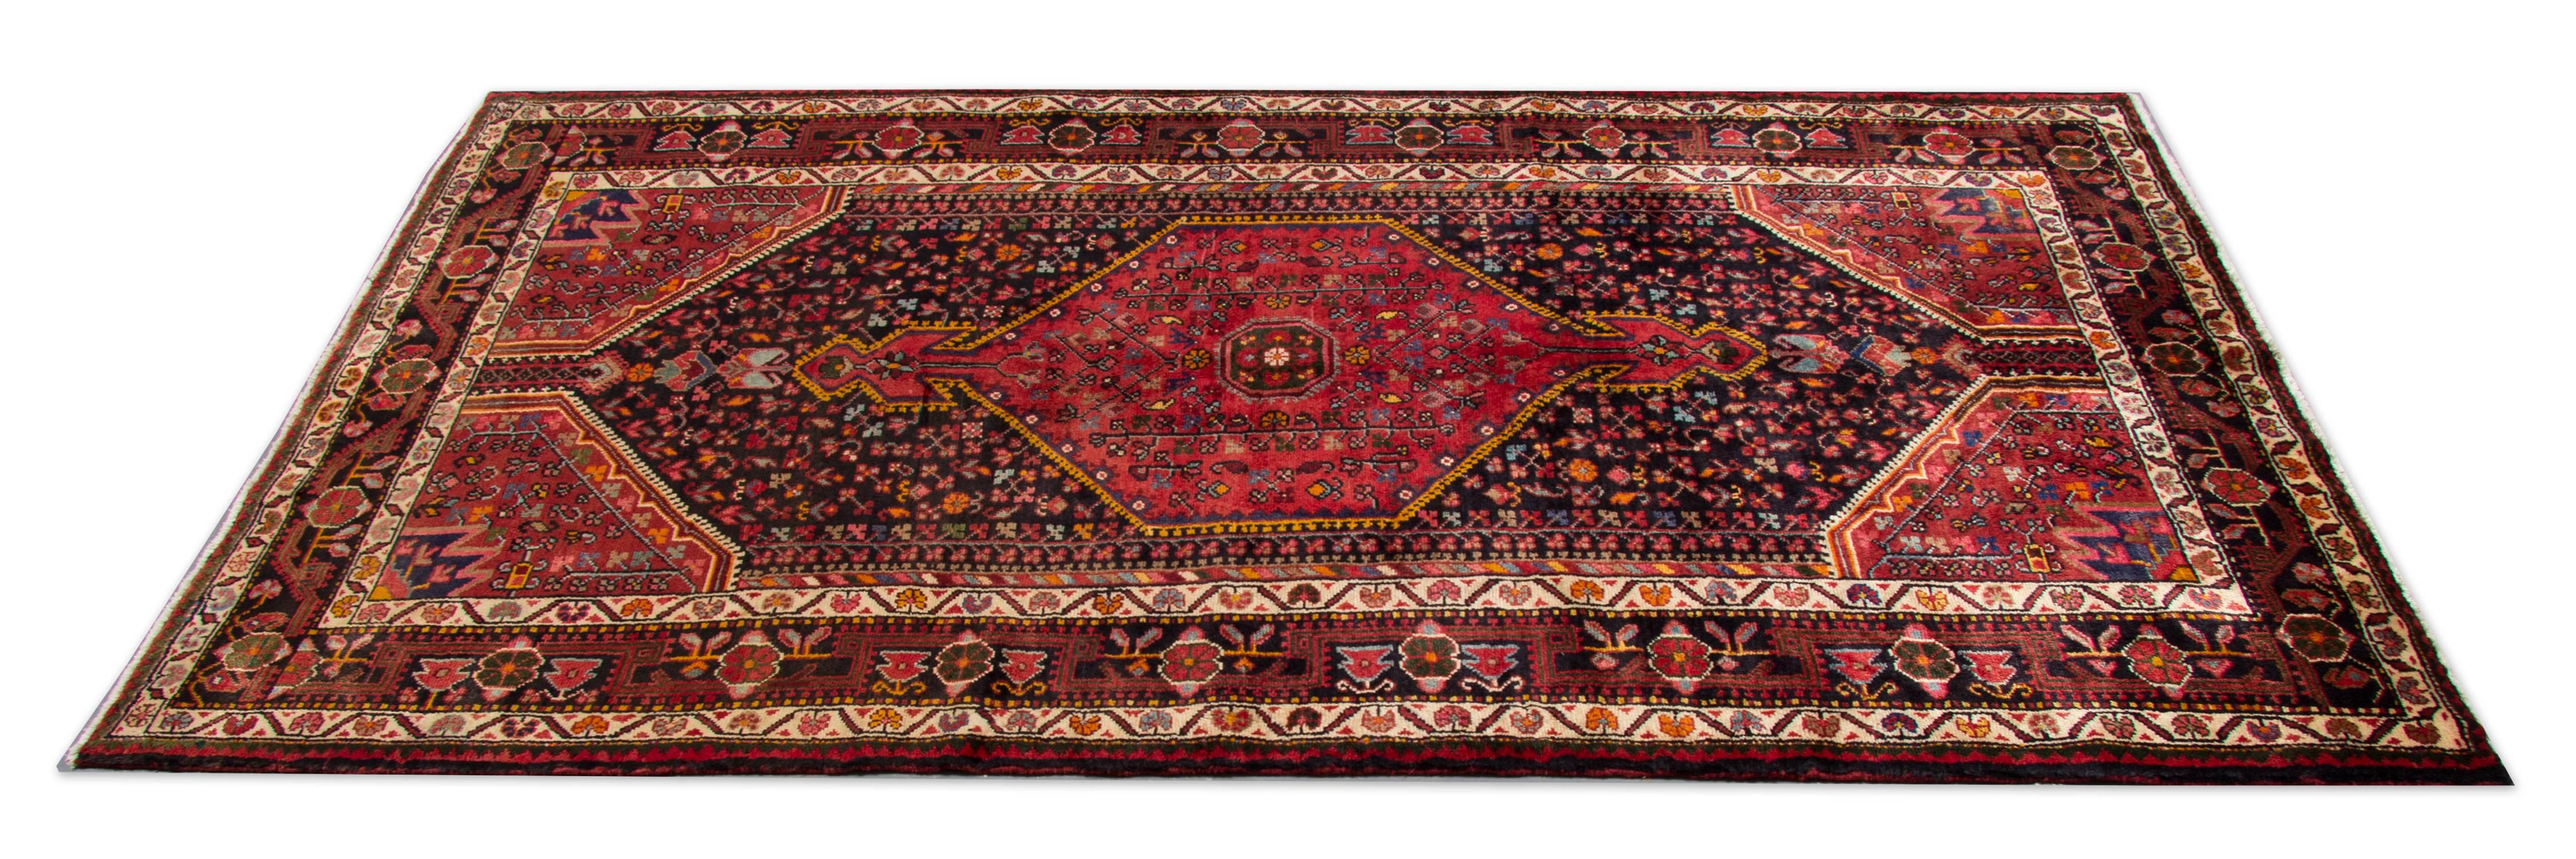 Tribal Rustic Carpet Vintage Oriental Rug, Handmade Geometric Wool Carpet For Sale